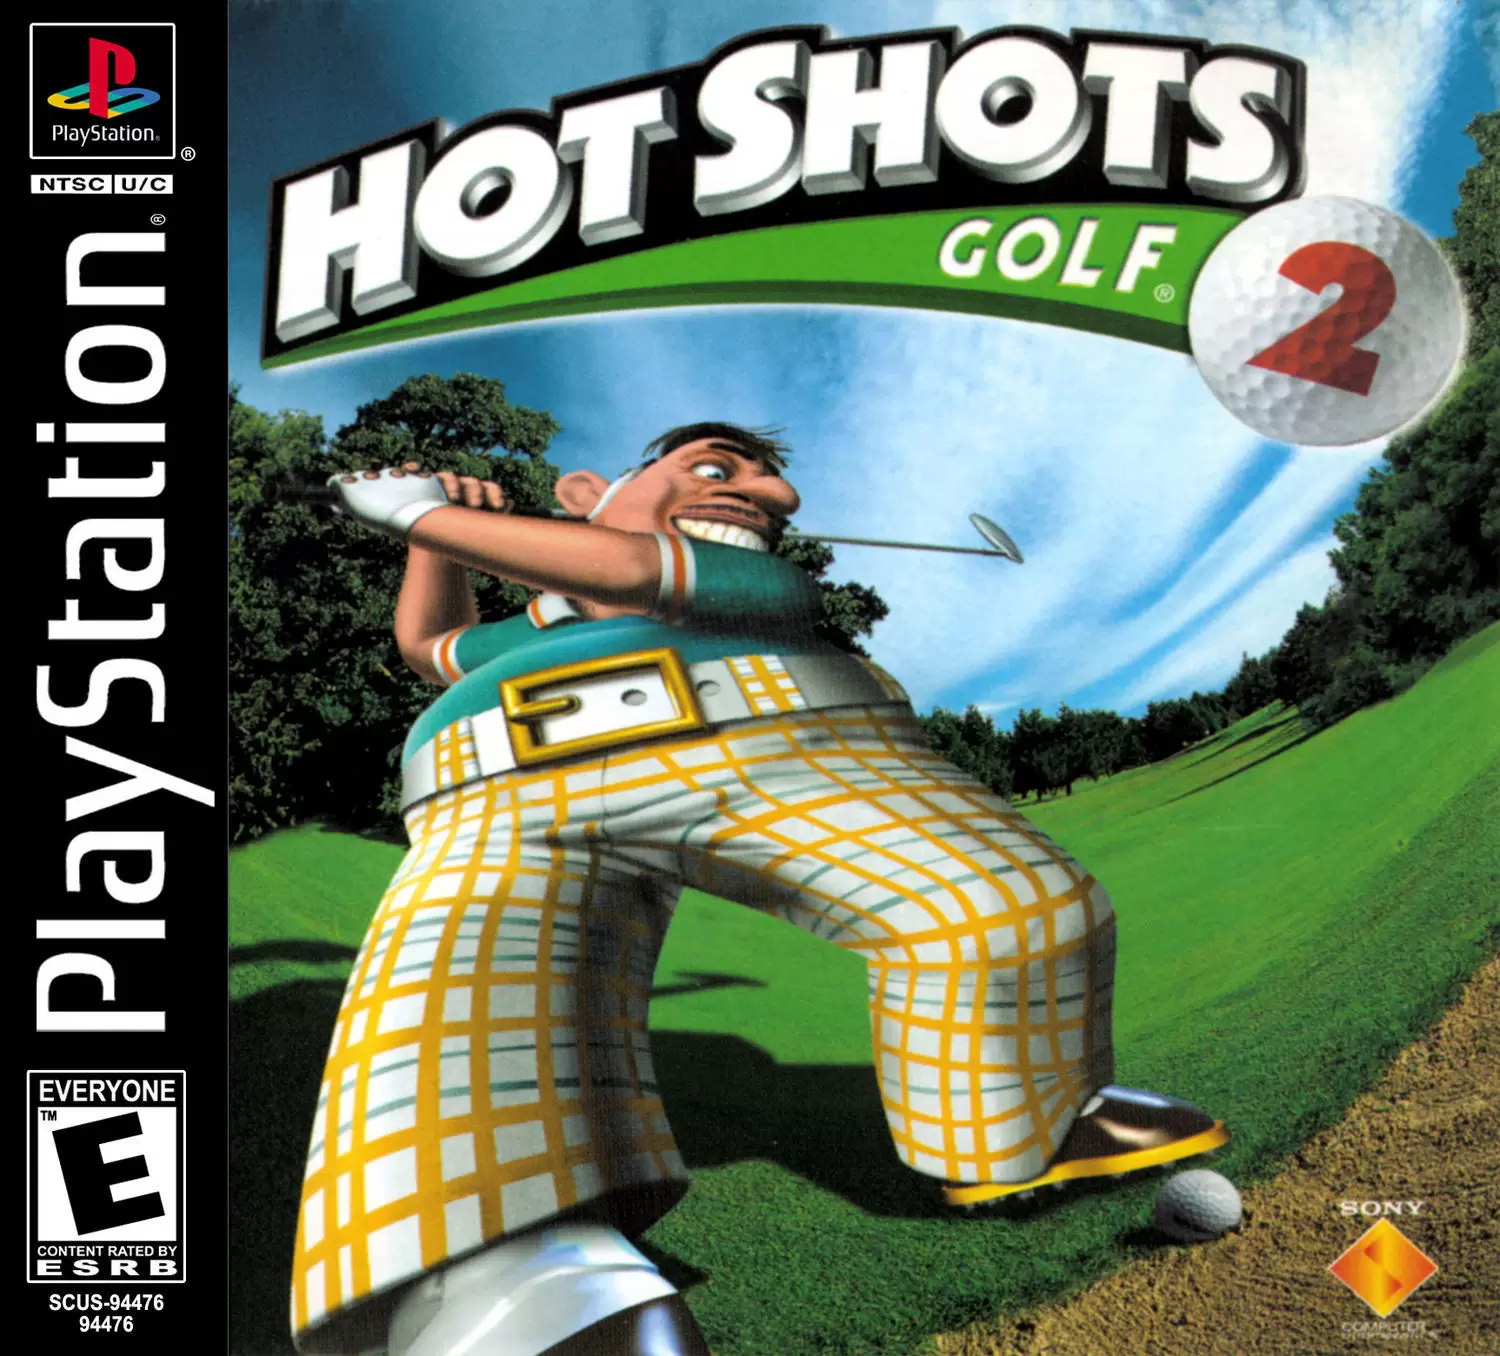 Playstation games - Hot Shots Golf 2